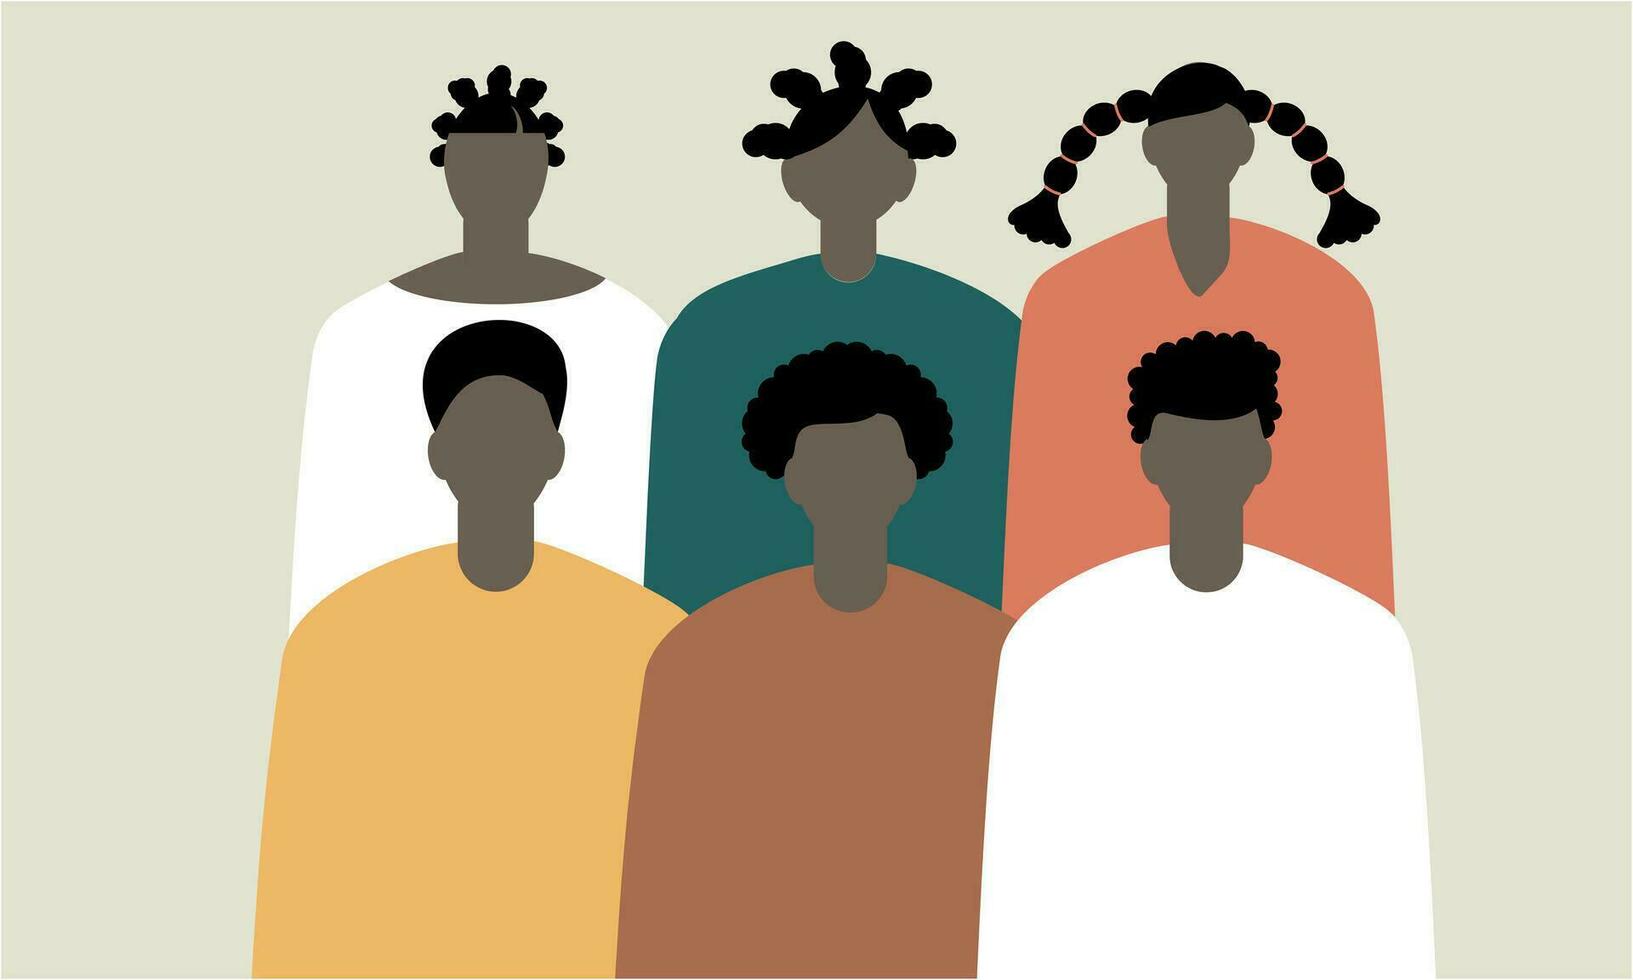 zwart gemeenschap, Afrikaanse mensen verzameld samen illustratie vector